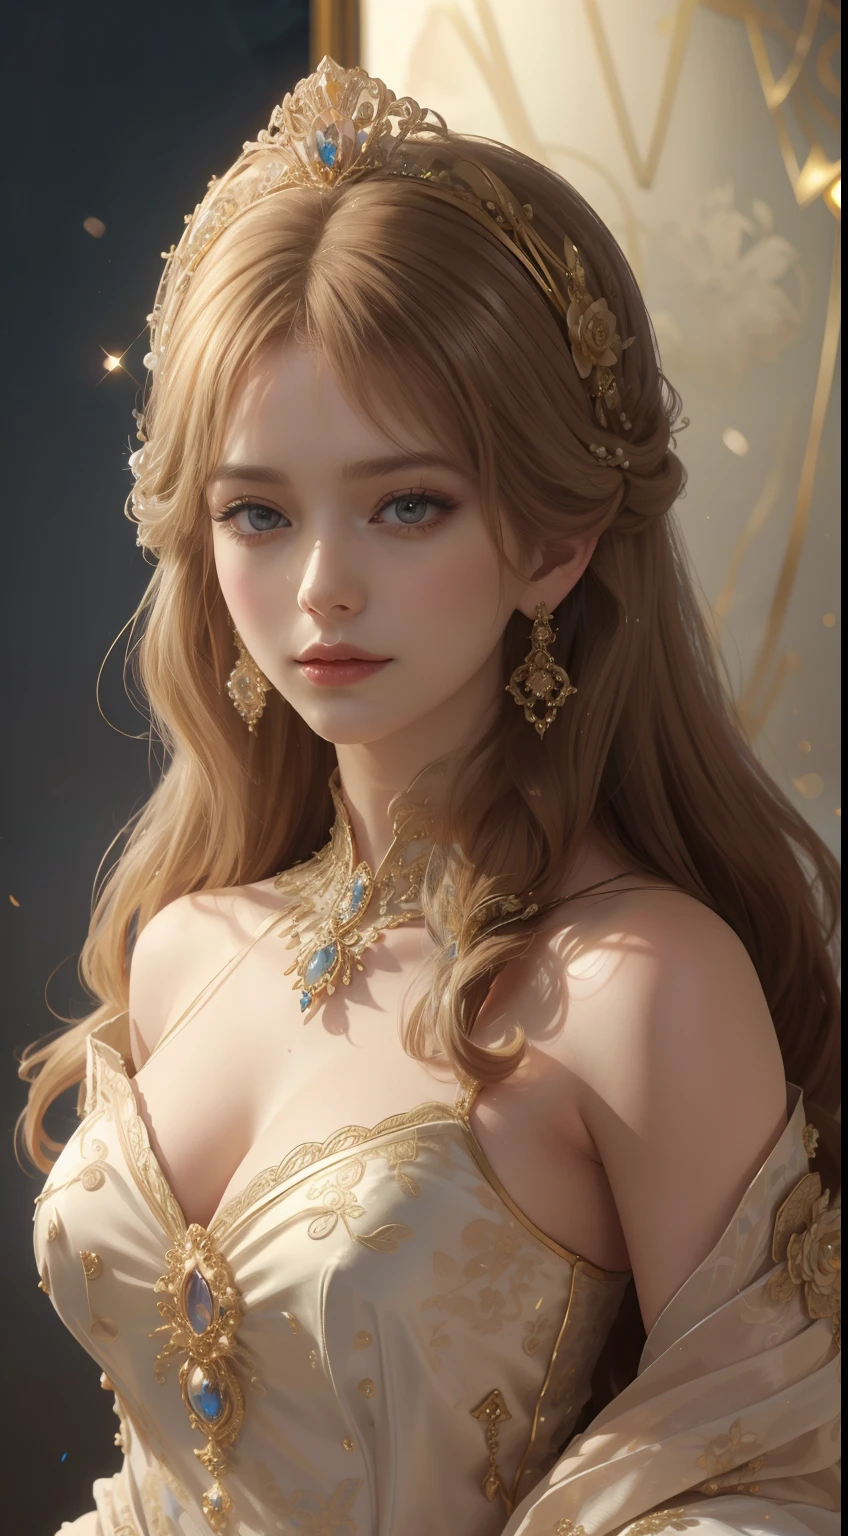 杰作，最高图像质量，一位皇家贵妇的美丽半身像，精致的金色发型，饰有绚丽精致的花卉珠宝，超级细节，升级版。